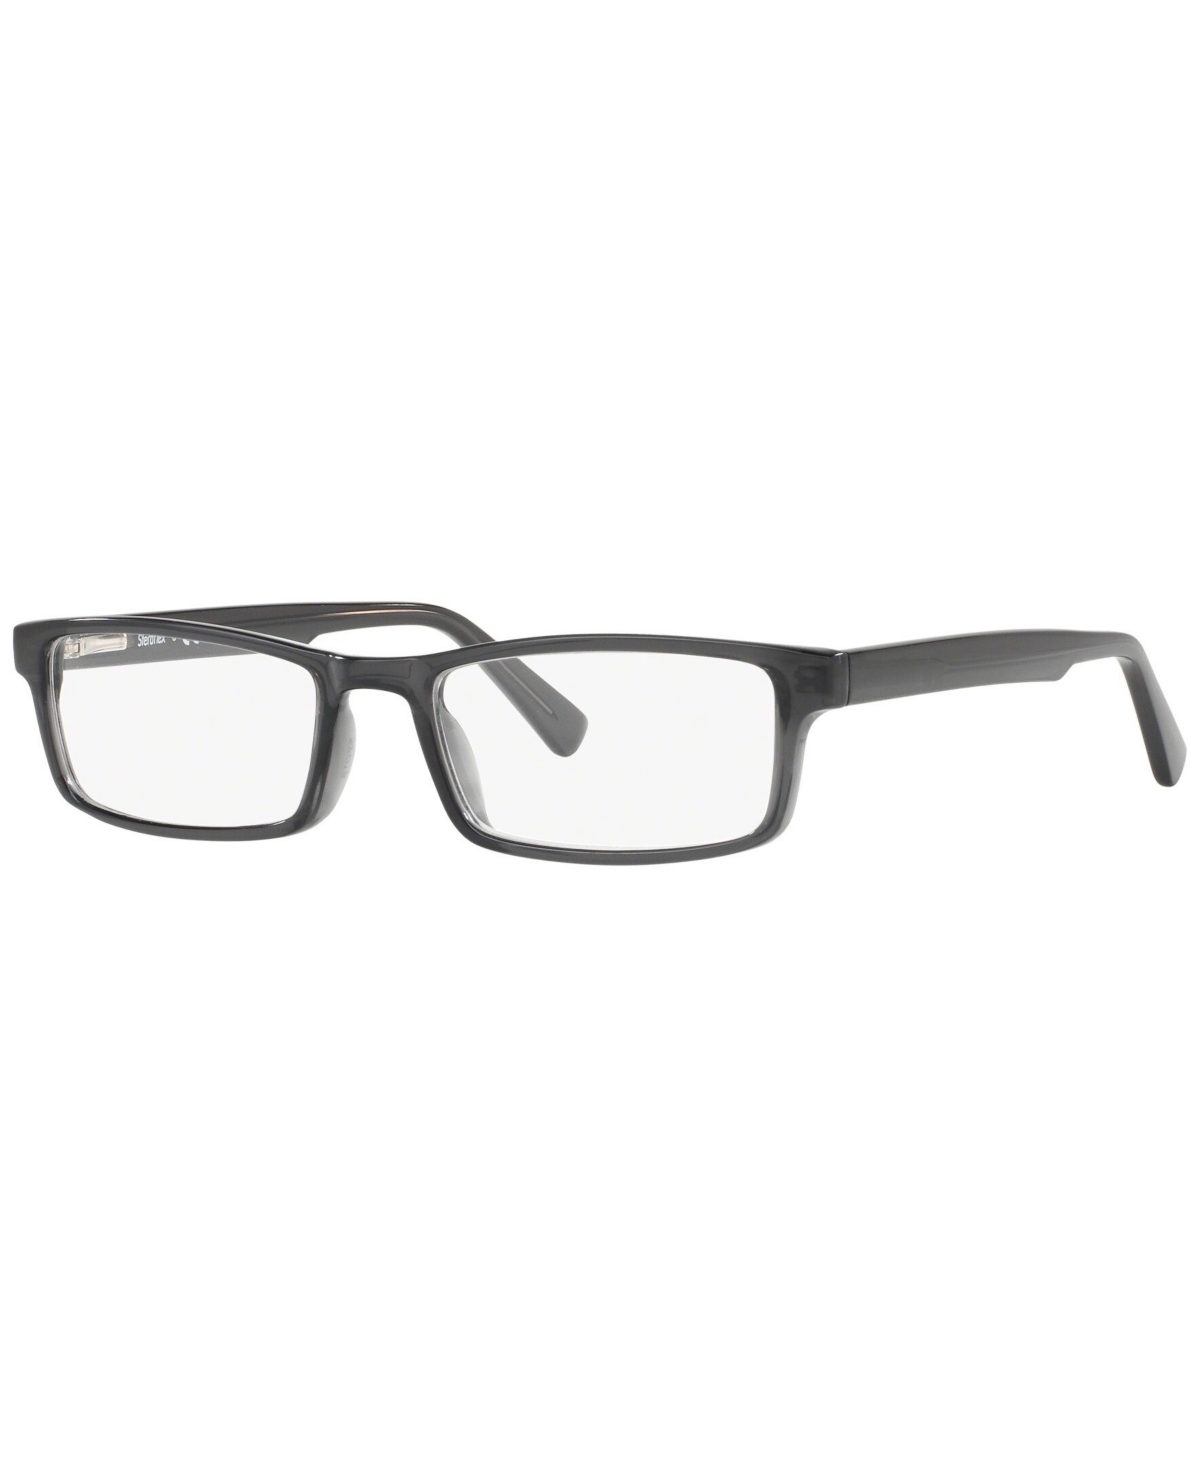 SF1150 Men's Rectangle Eyeglasses - Tortoise